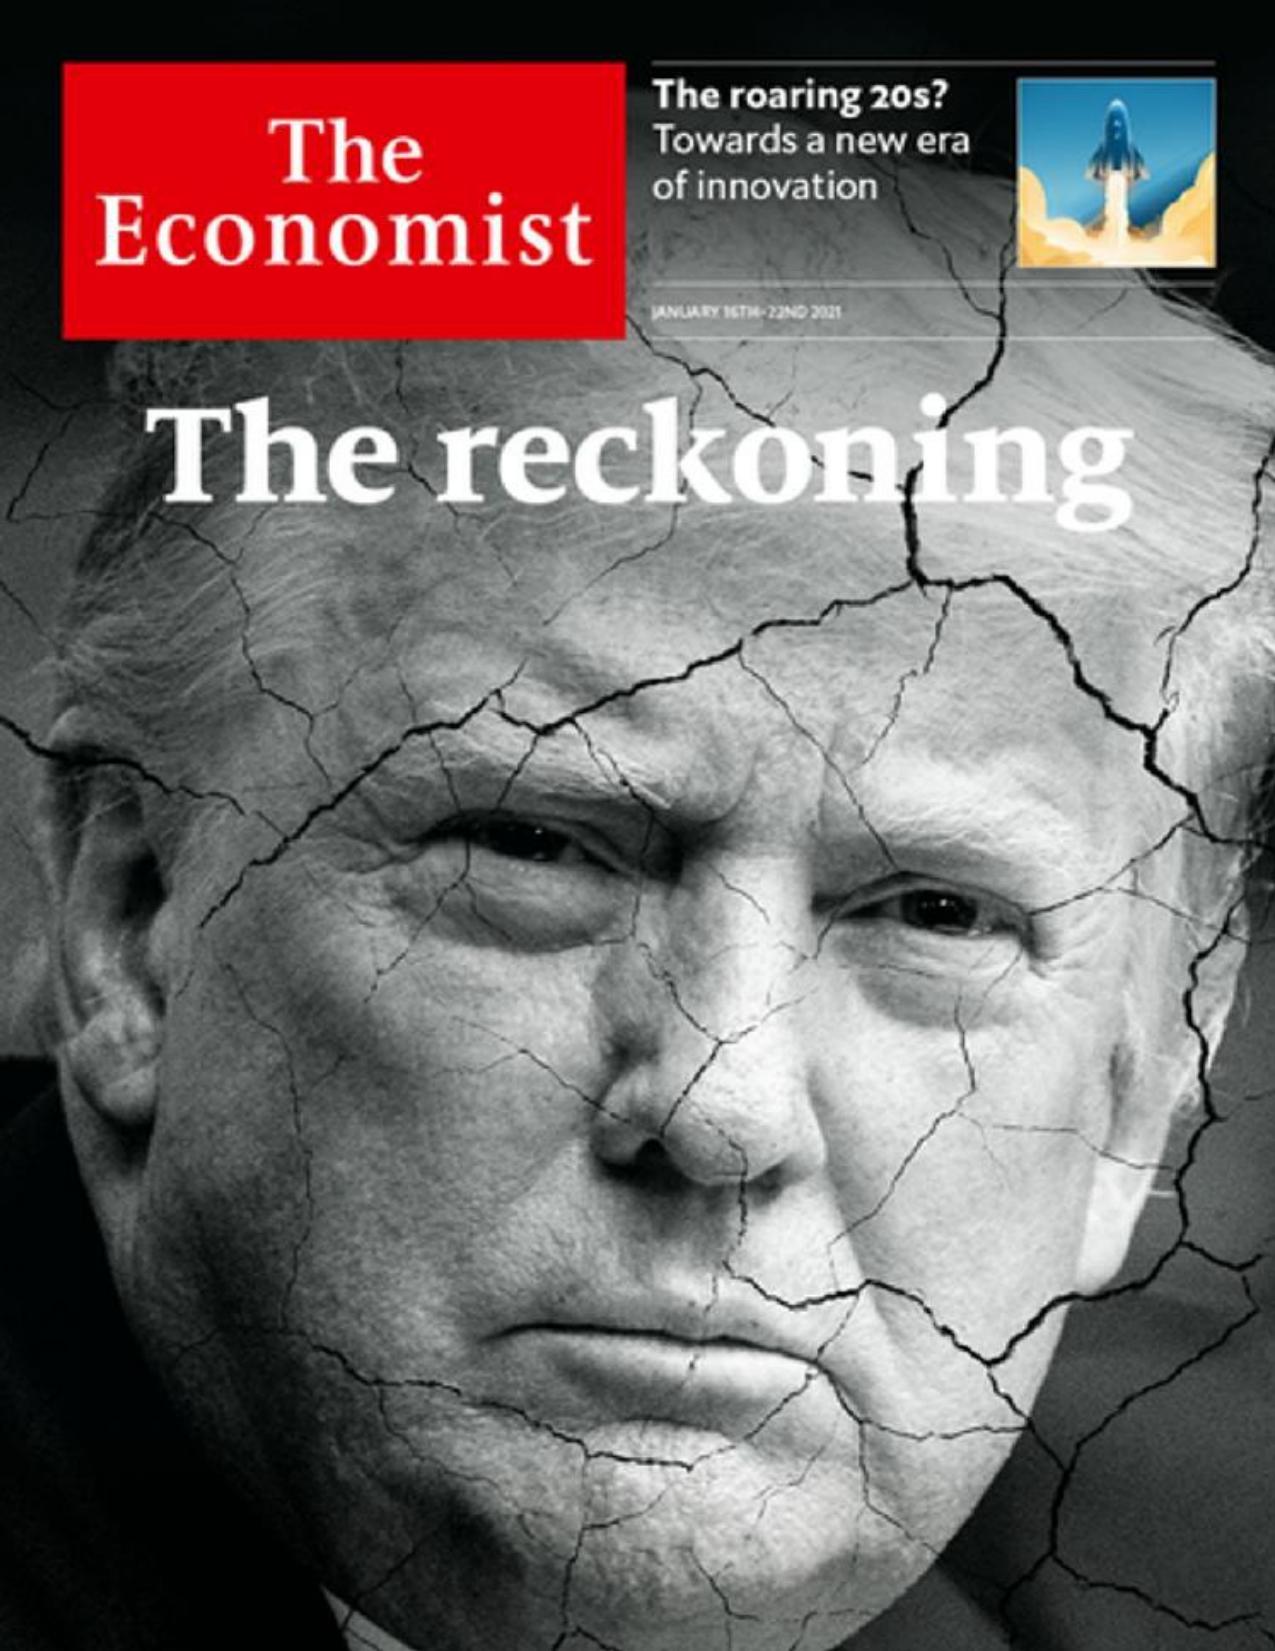 The Economist (20210116) by calibre